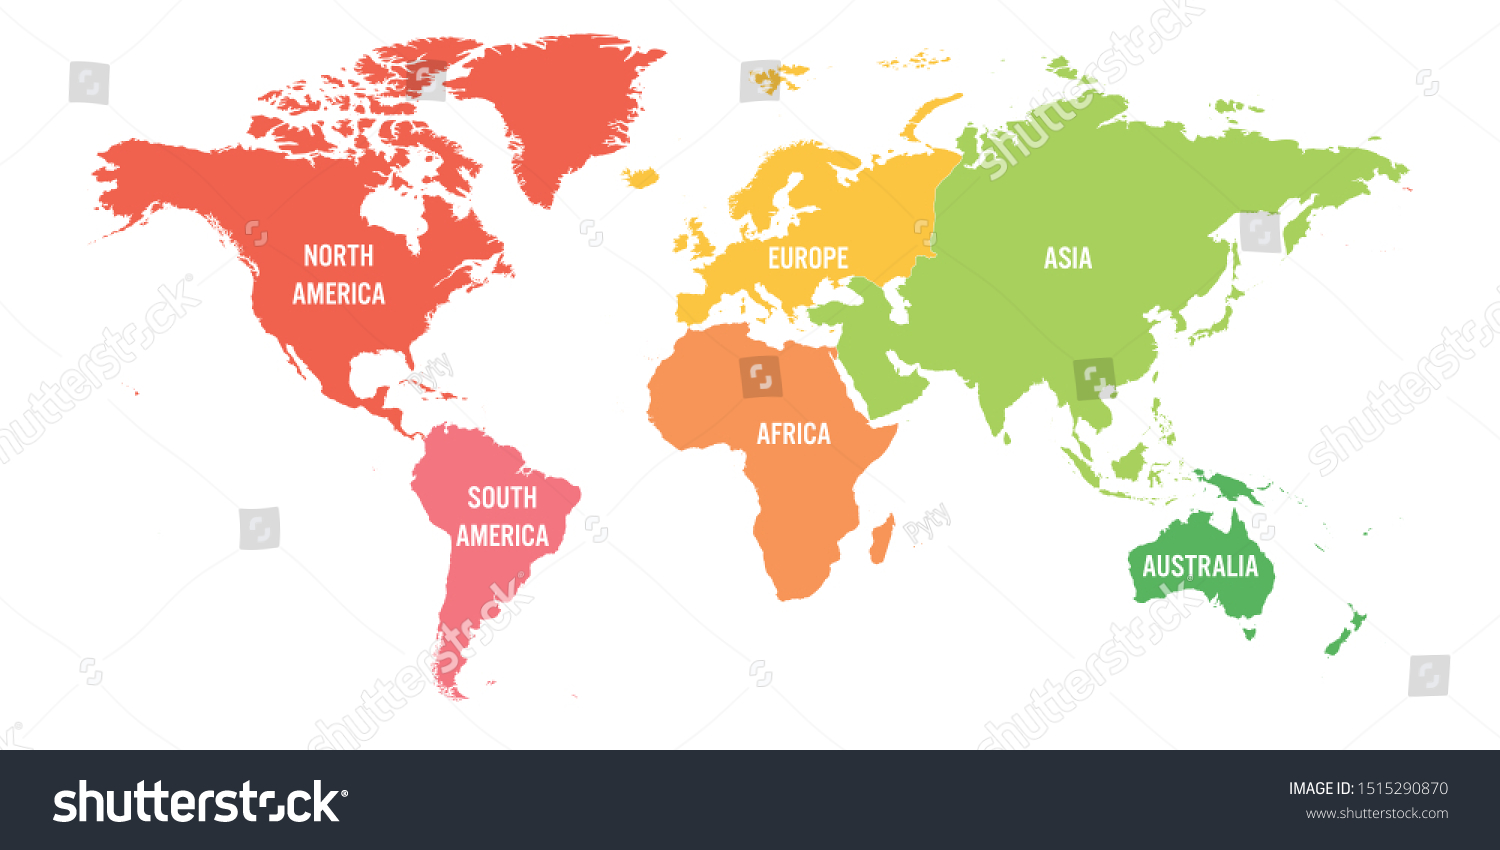 世界地図は6大陸に分かれている 大陸ごとに色が違う 単純な平らなベクター画像イラスト のベクター画像素材 ロイヤリティフリー